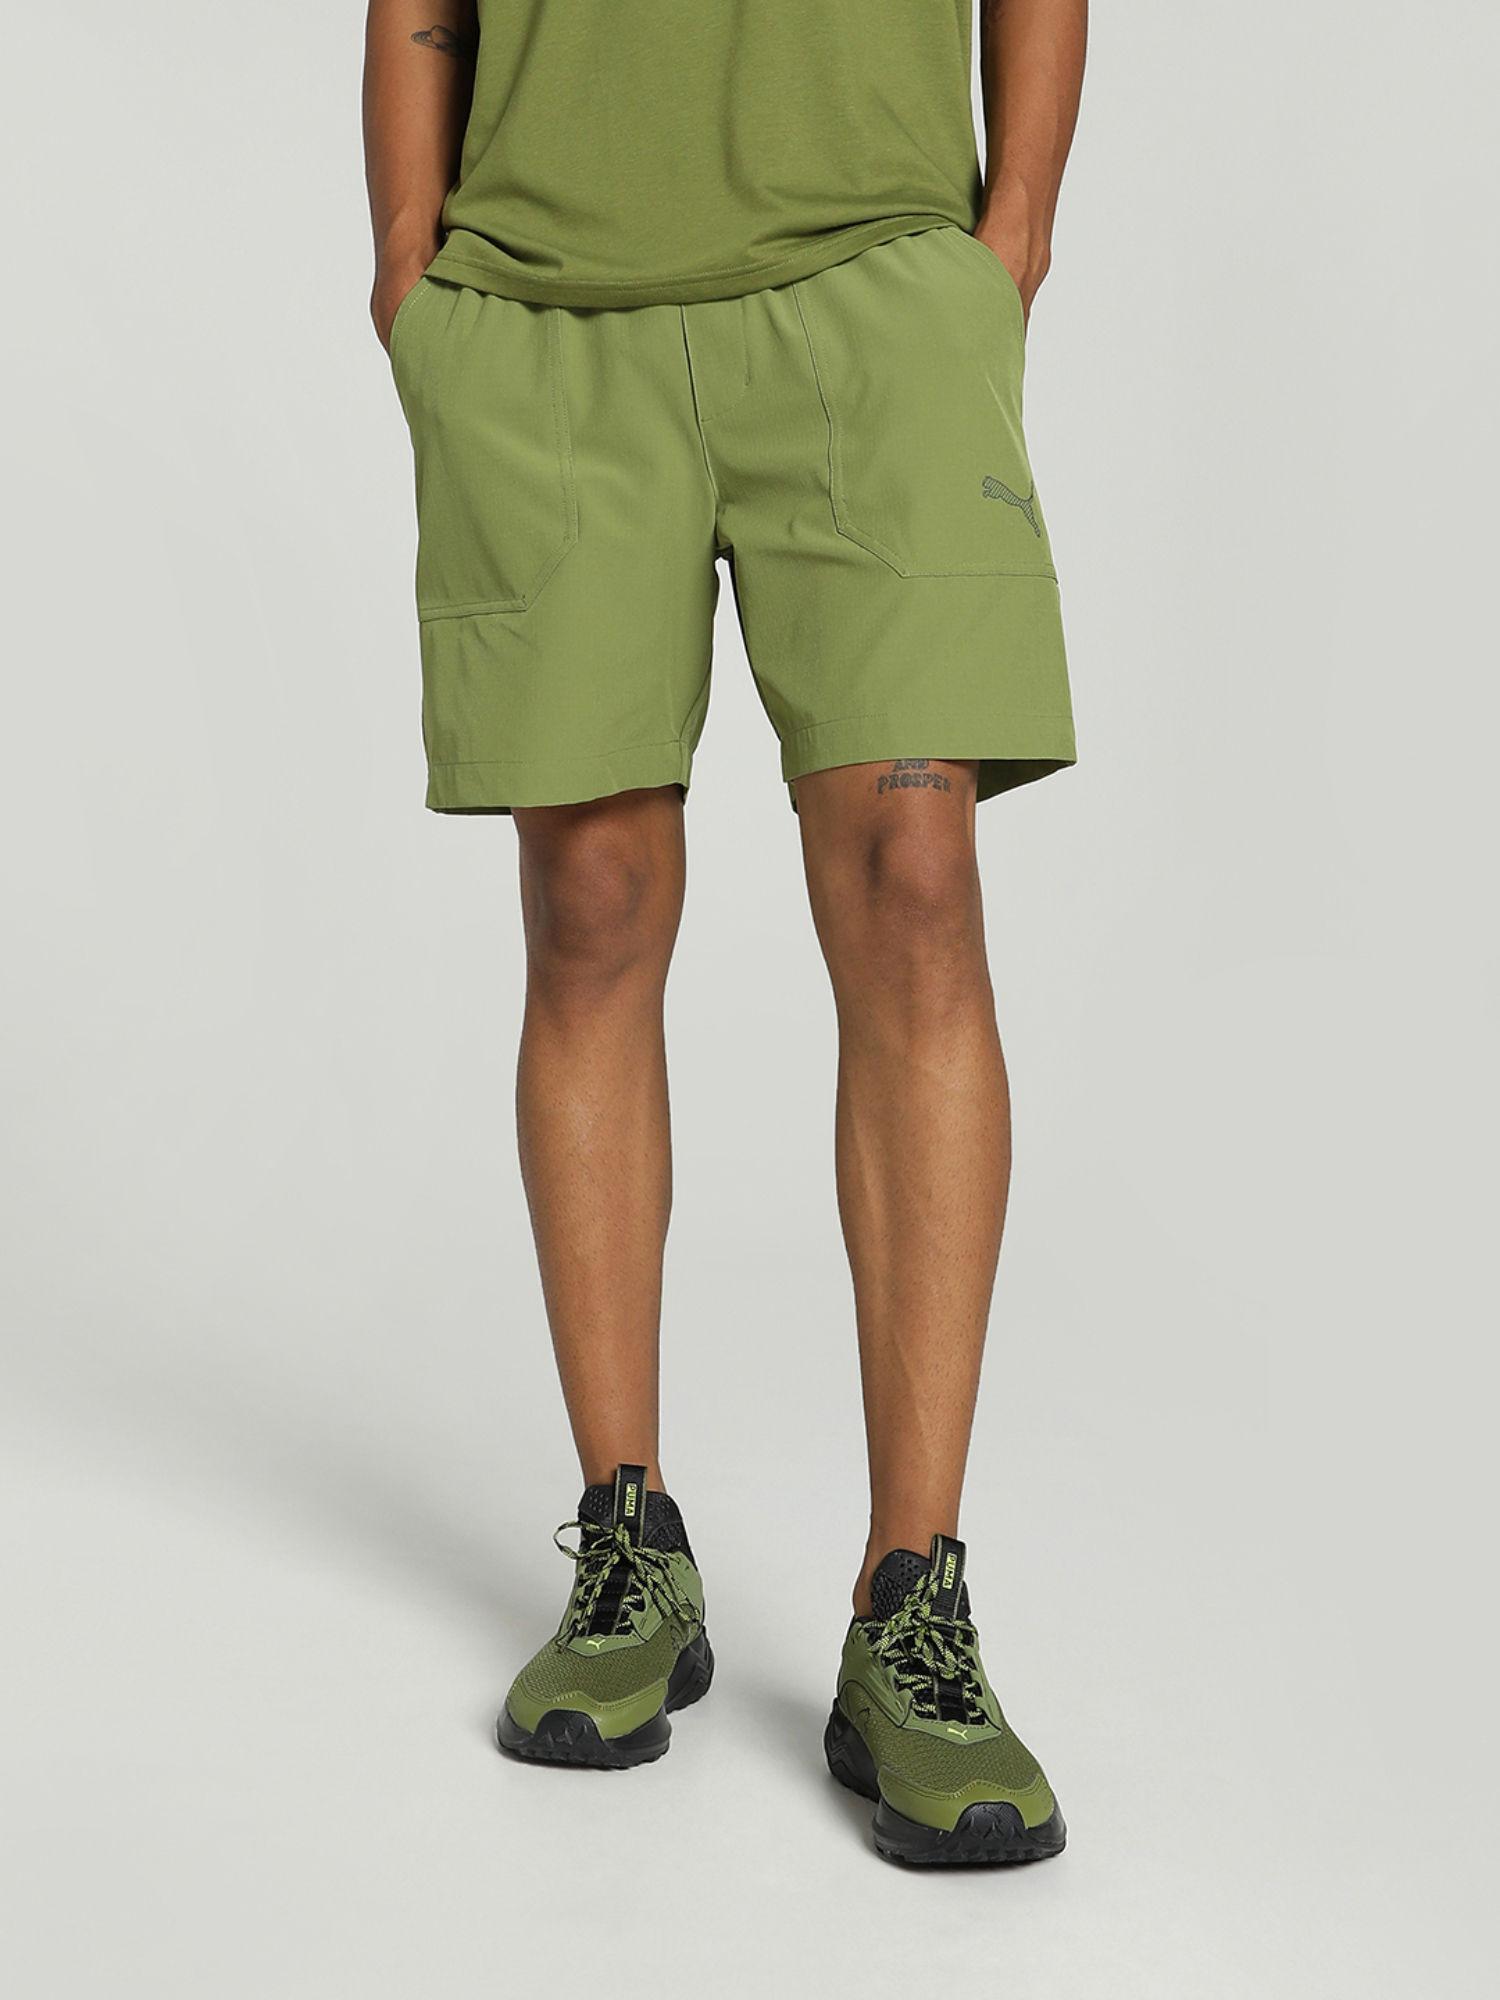 concept 8 woven mens green shorts